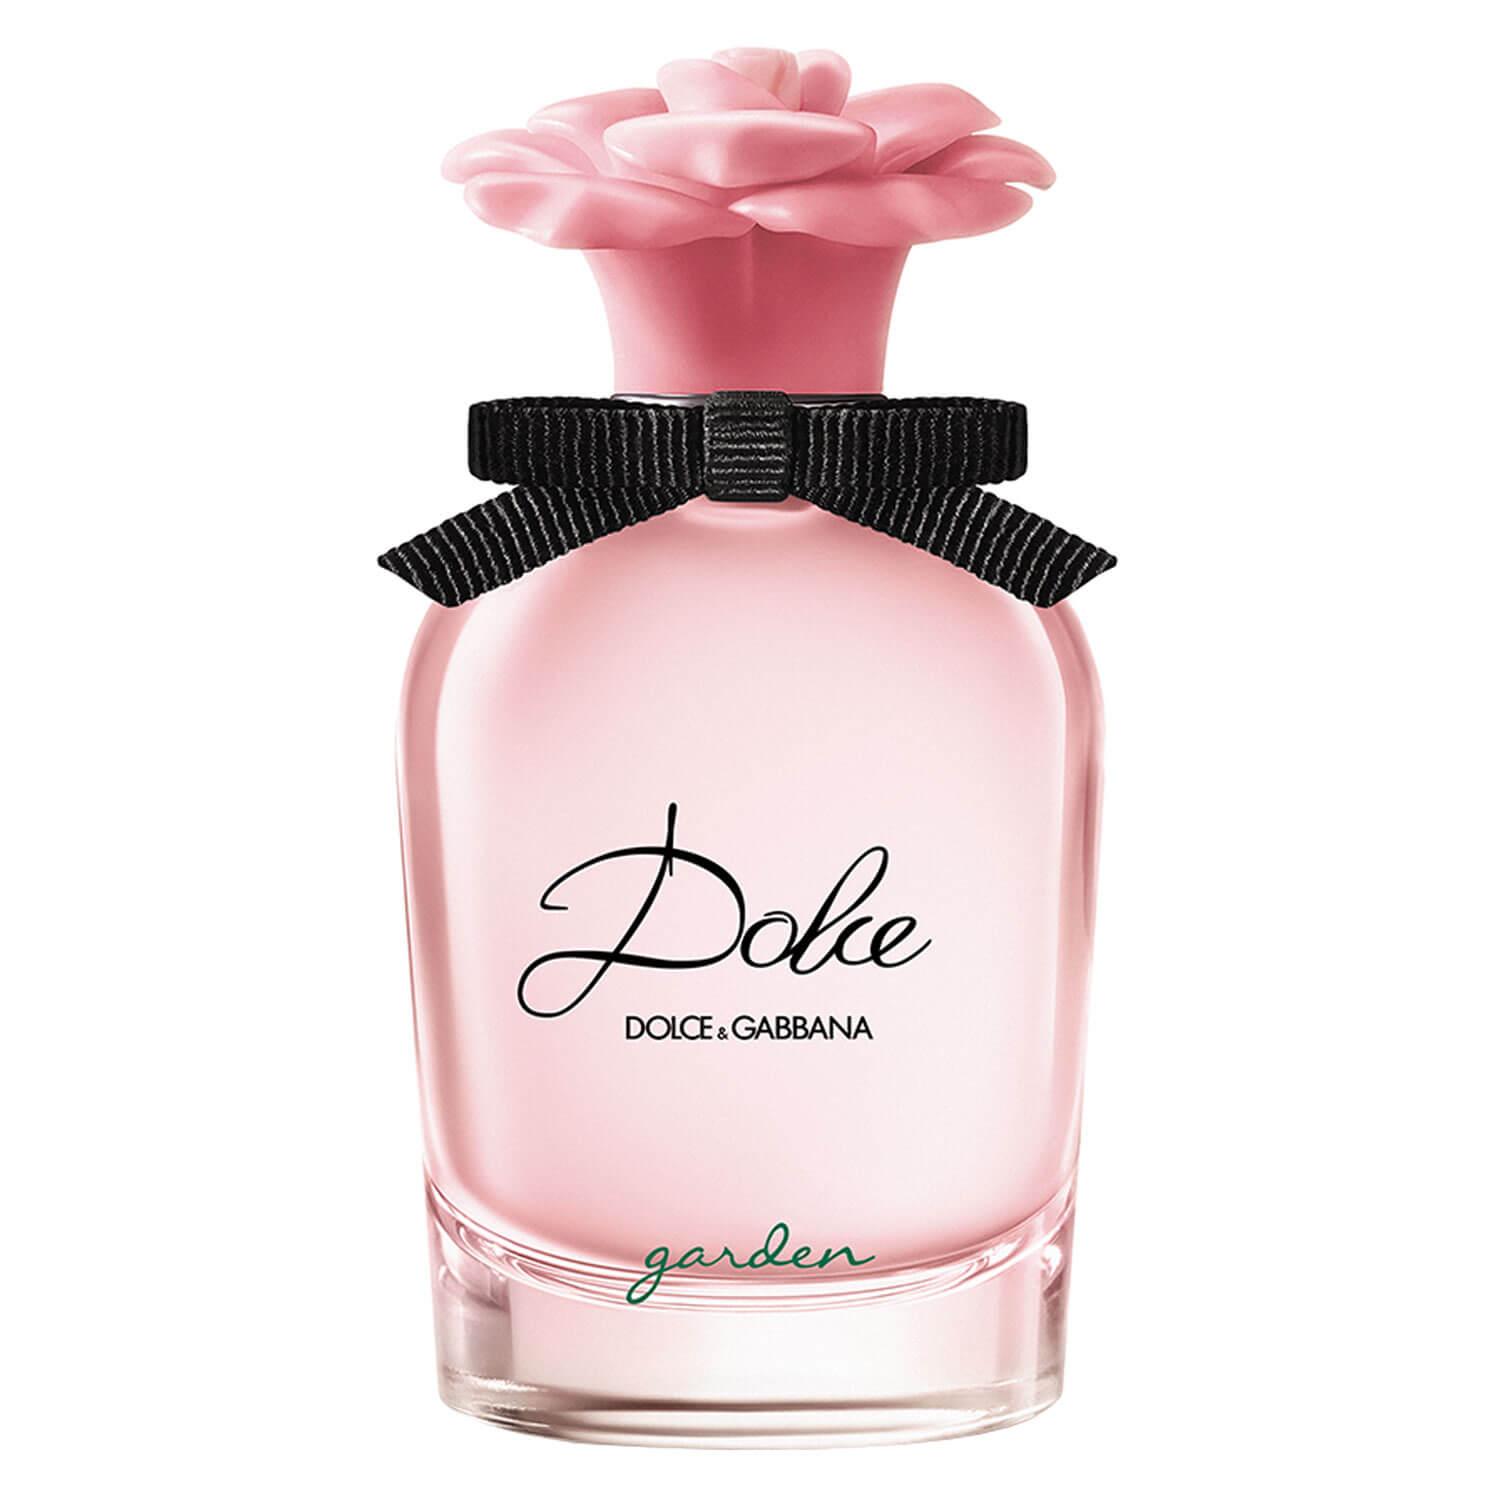 D&G Dolce - Garden Eau de Parfum